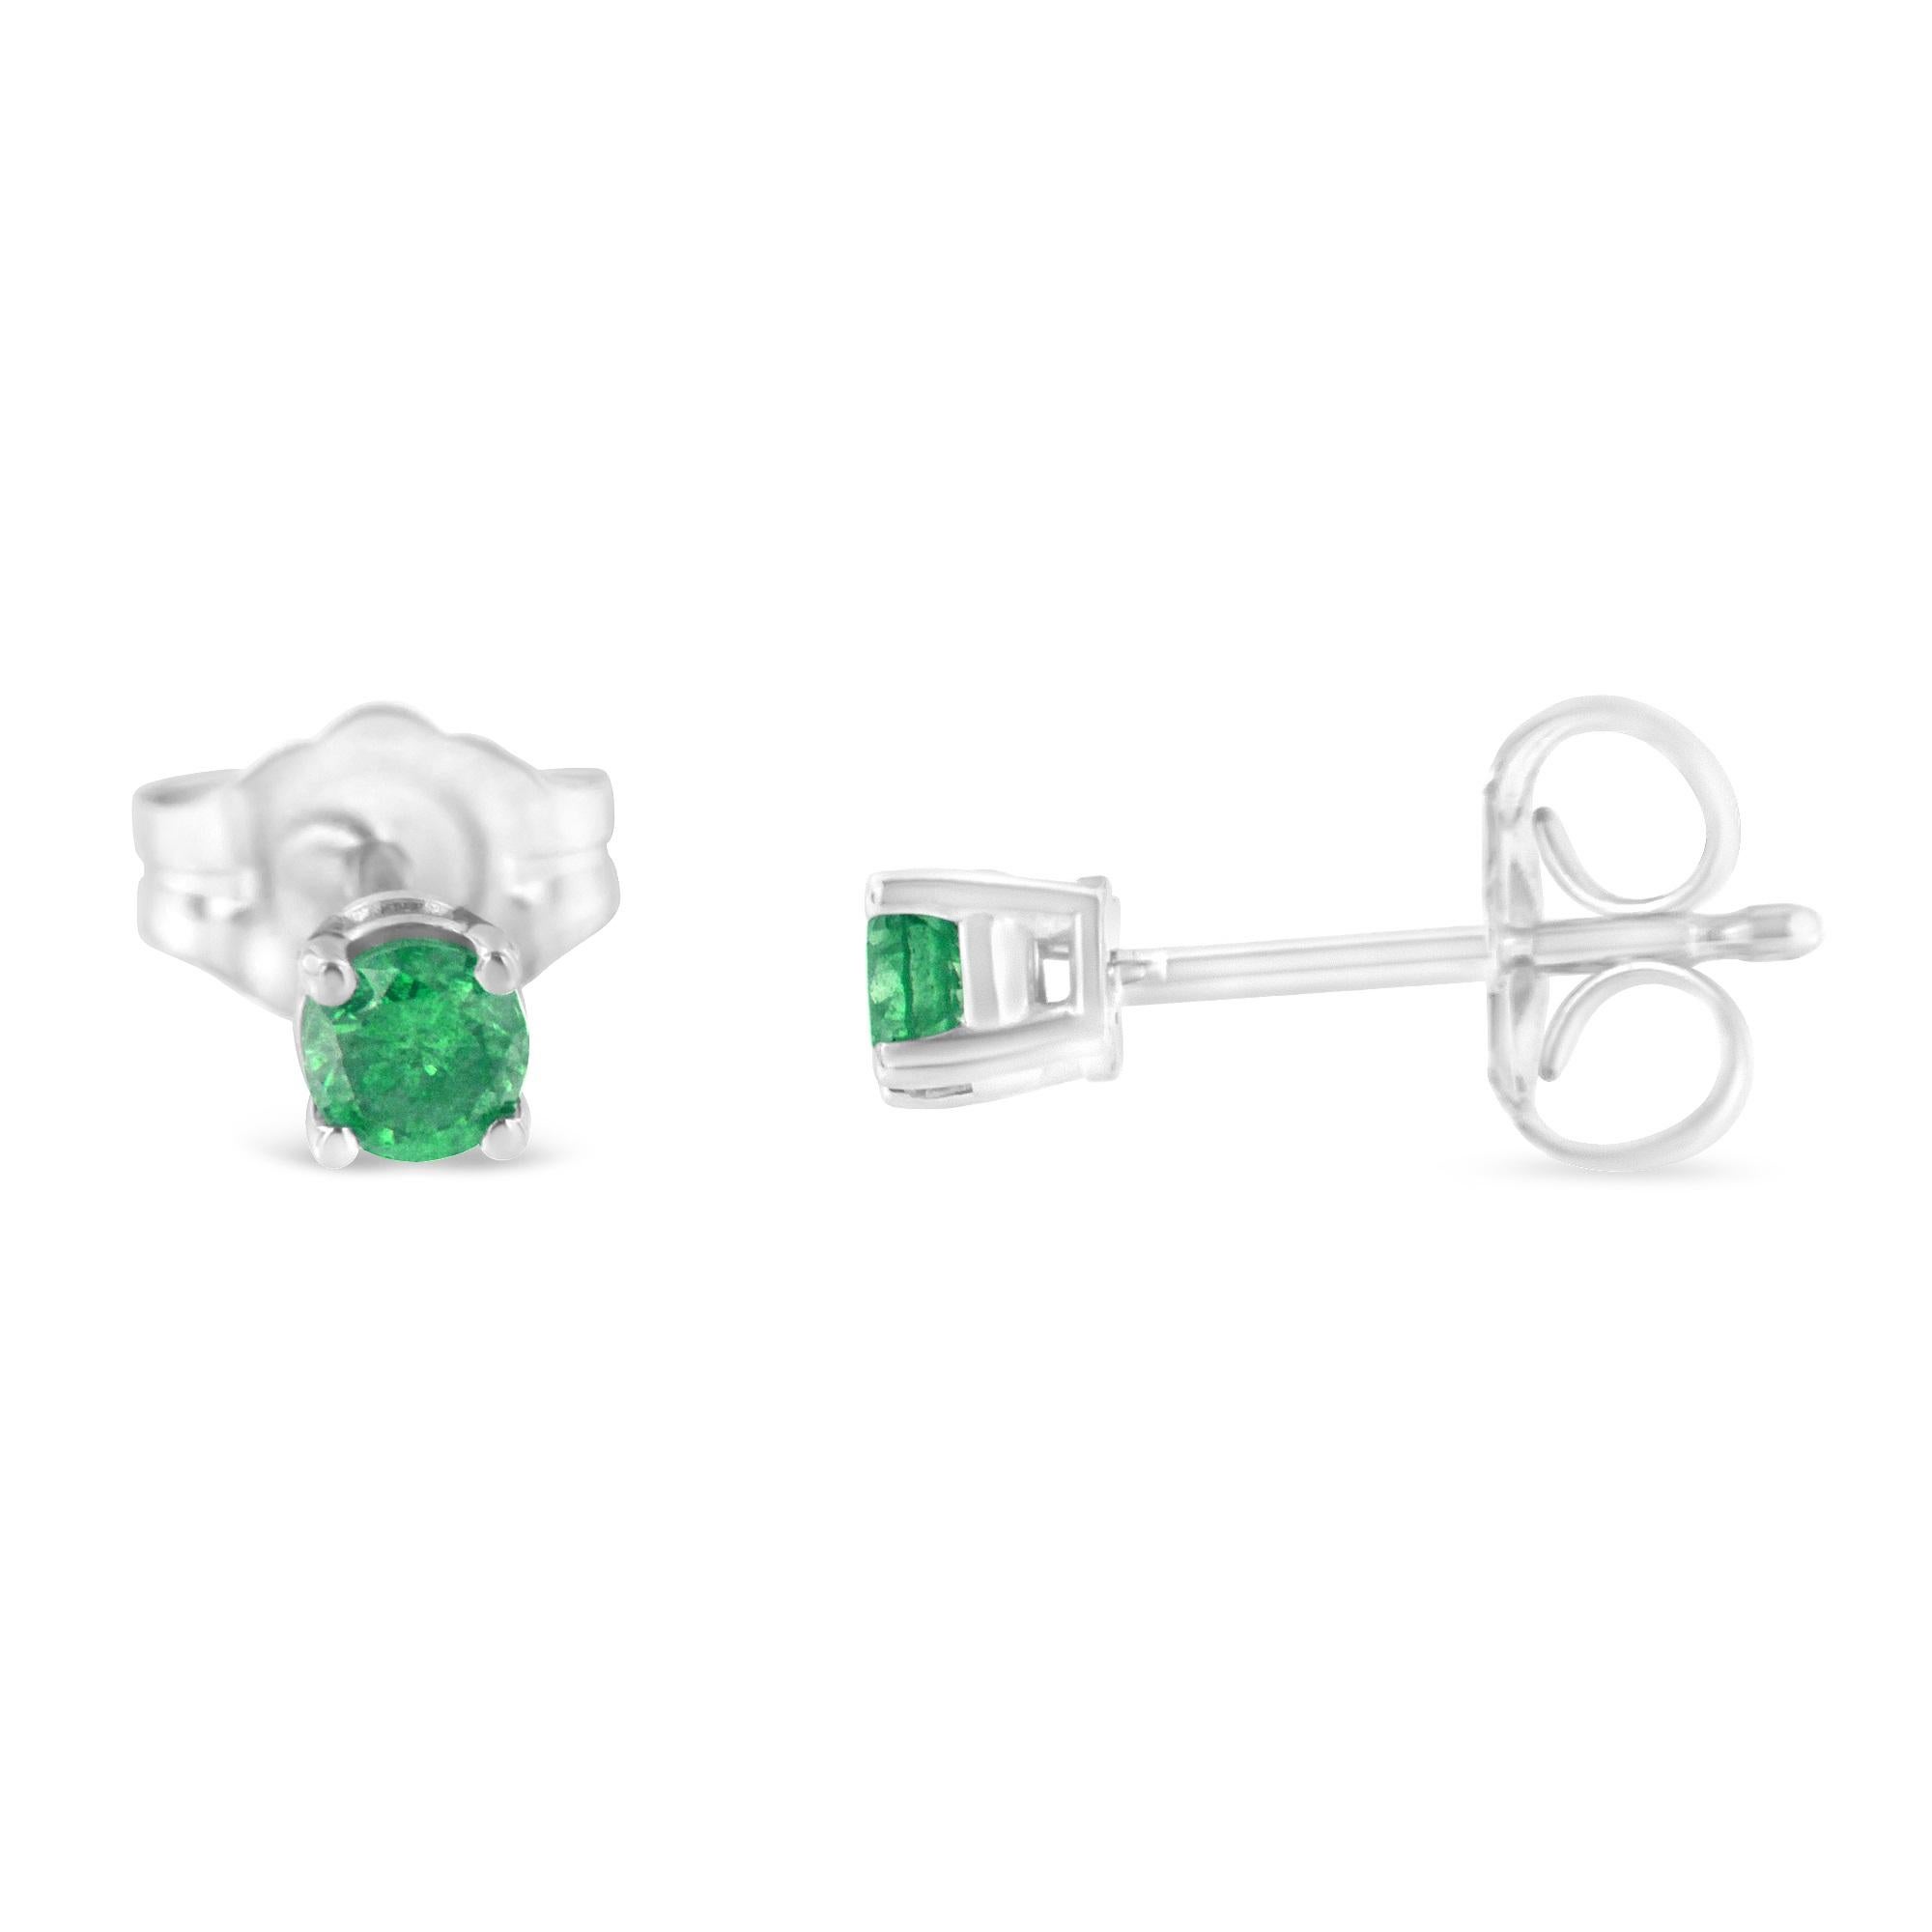 Ein Paar behandelte grüne Diamanten und Ohrstecker aus Sterlingsilber. Jeder Ohrring ist mit einem runden Diamanten in einer 925er Sterlingsilber-Zackenfassung versehen. Das Gesamtgewicht der Diamanten beträgt 0,25 Karat. Sie sind mit einem